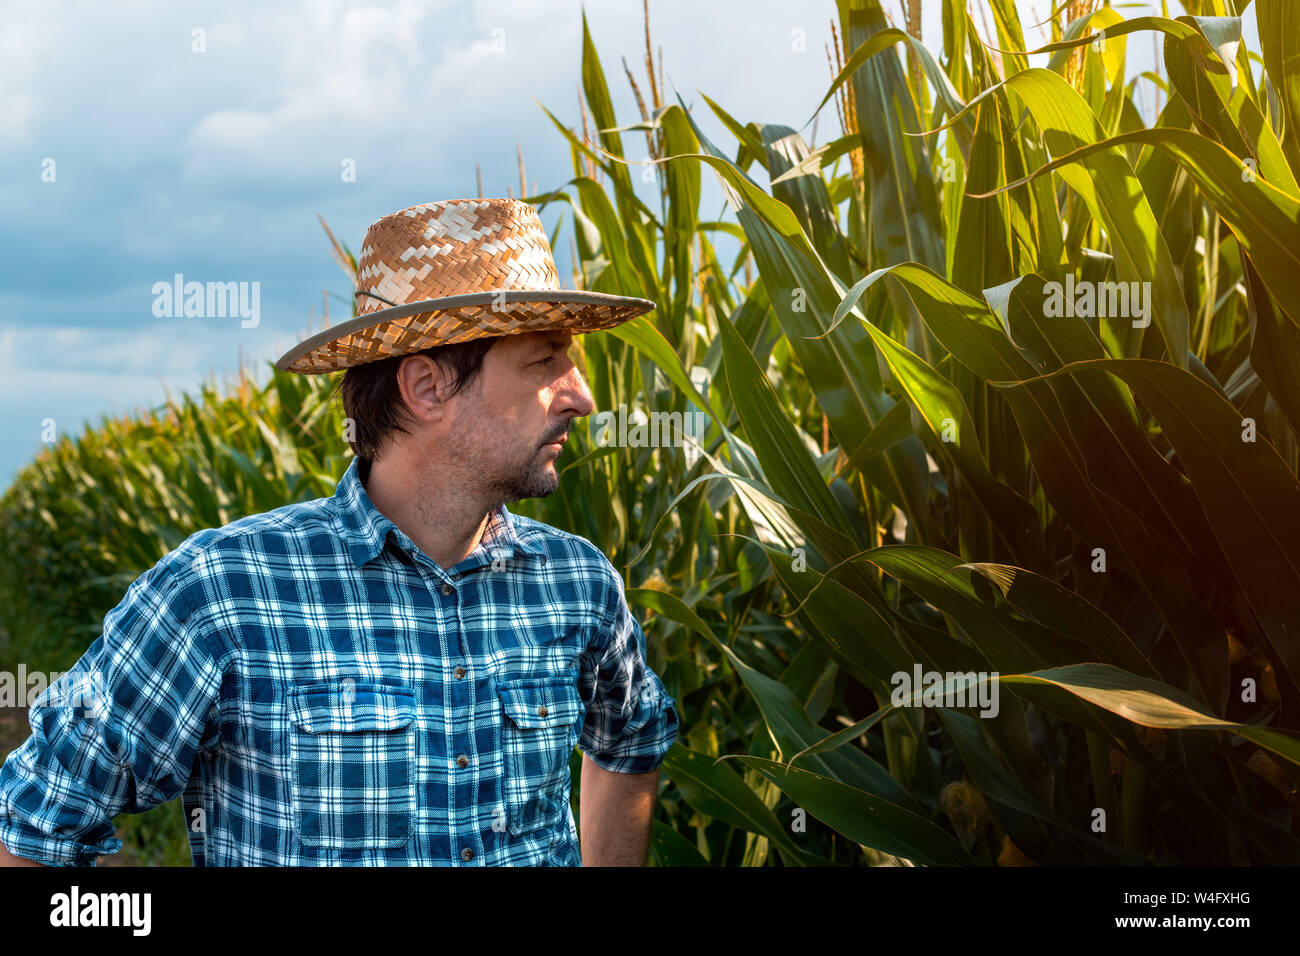 Maïs grave farmer portrait dans le champ cultivé. Authentique adultes caucasien homme avec chapeau de paille et chemise à carreaux pose sur plantation de maïs biologique, Banque D'Images